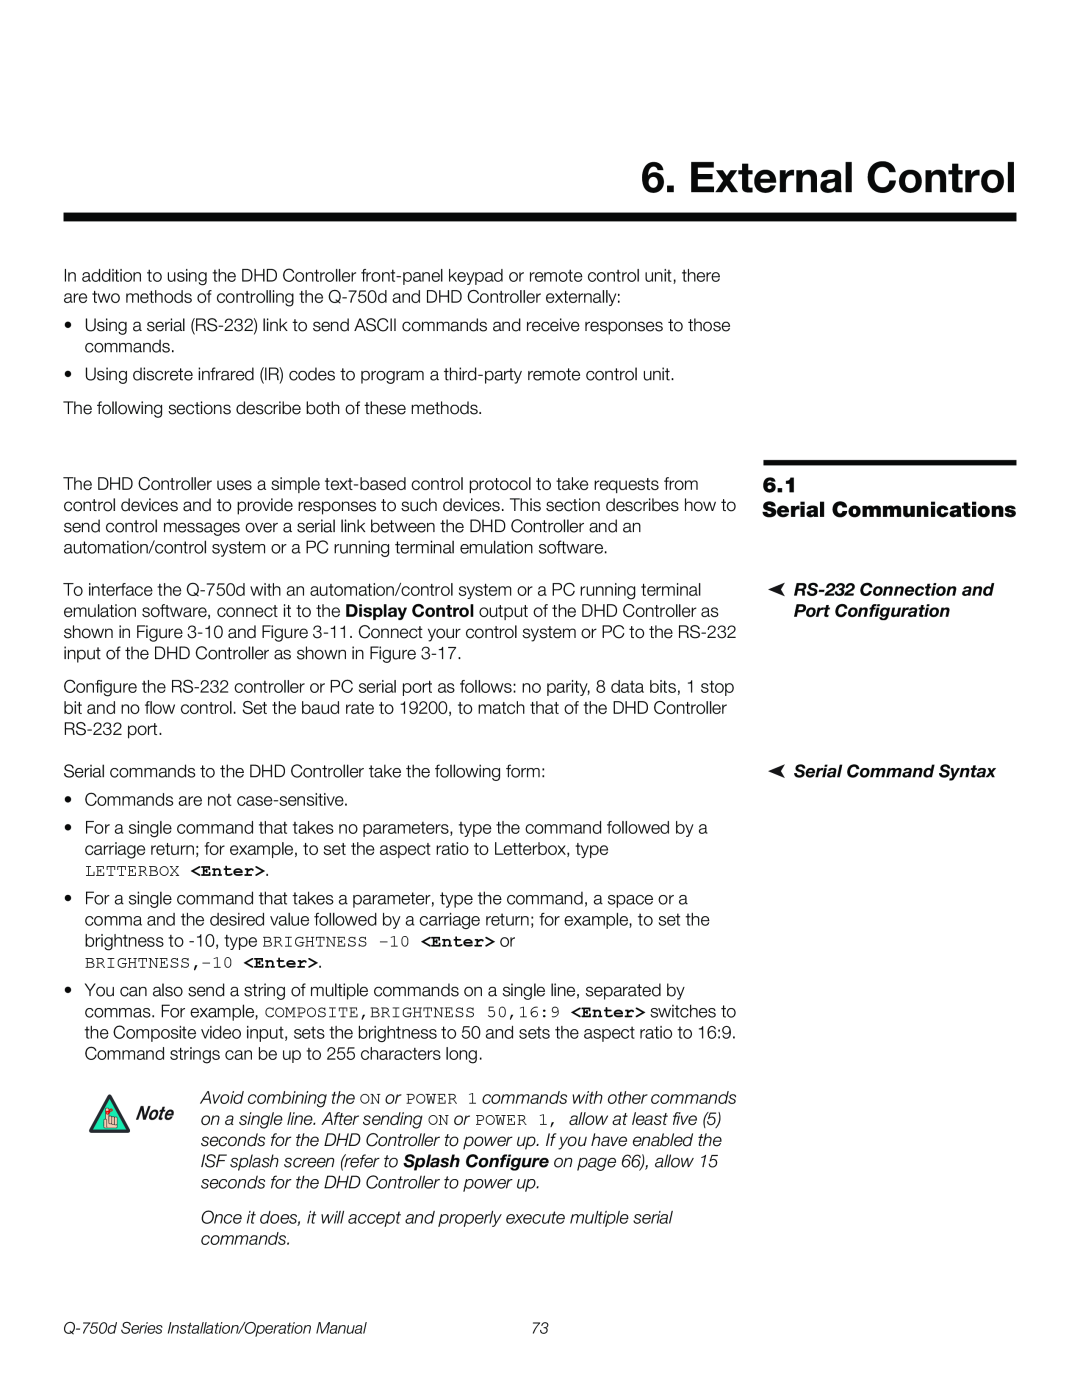 Runco Q-750D operation manual External Control, Serial Communications 